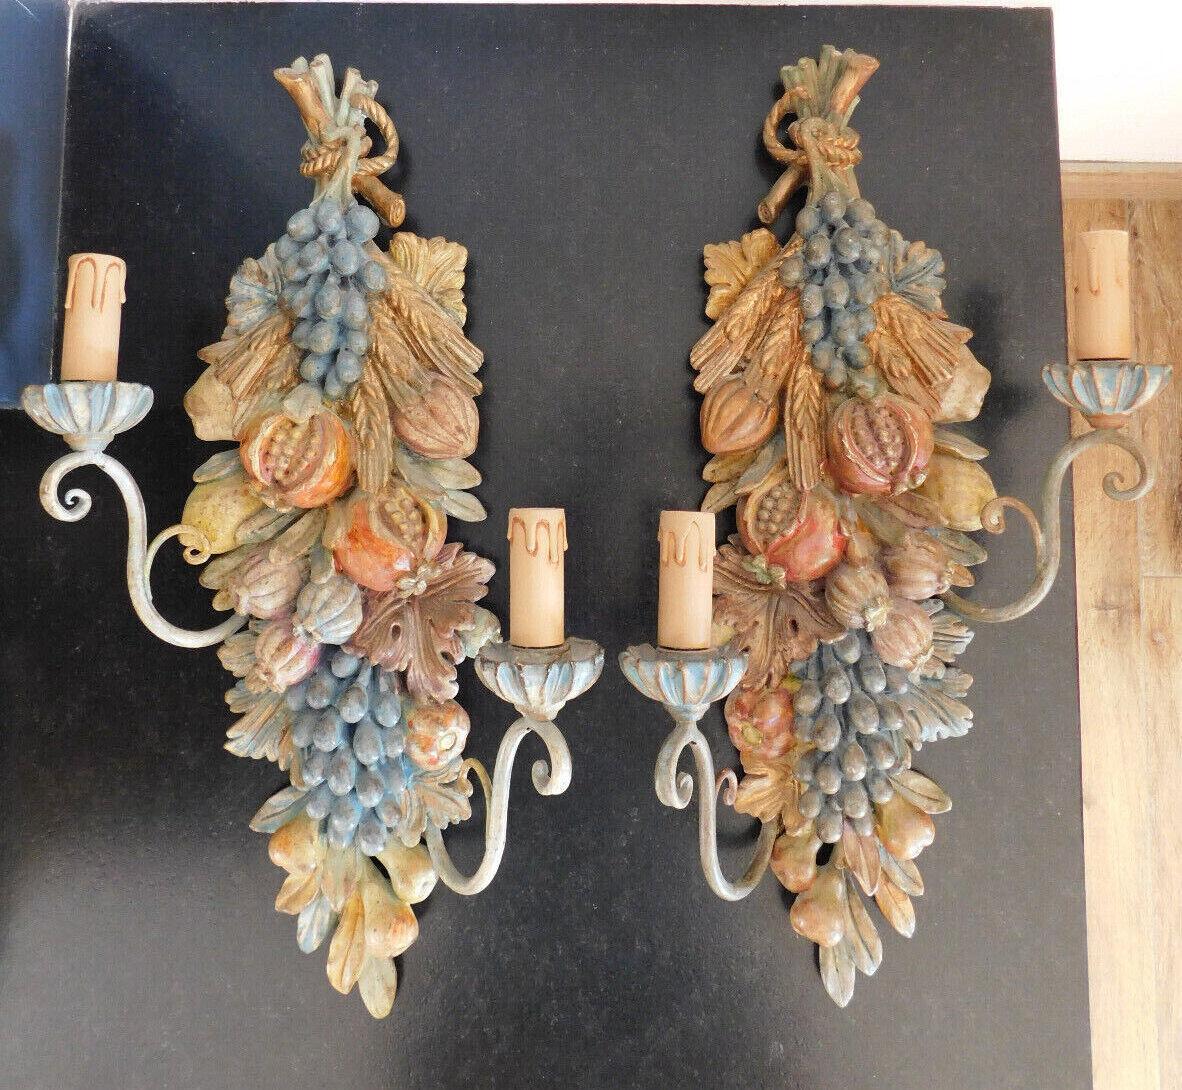 Paar große Art Nouveau fachmännisch geschnitzt und patiniert Holz Wandleuchter. Polychrome Töne, Früchte, Blumen. Französisch Nachlassverkauf Erwerb.